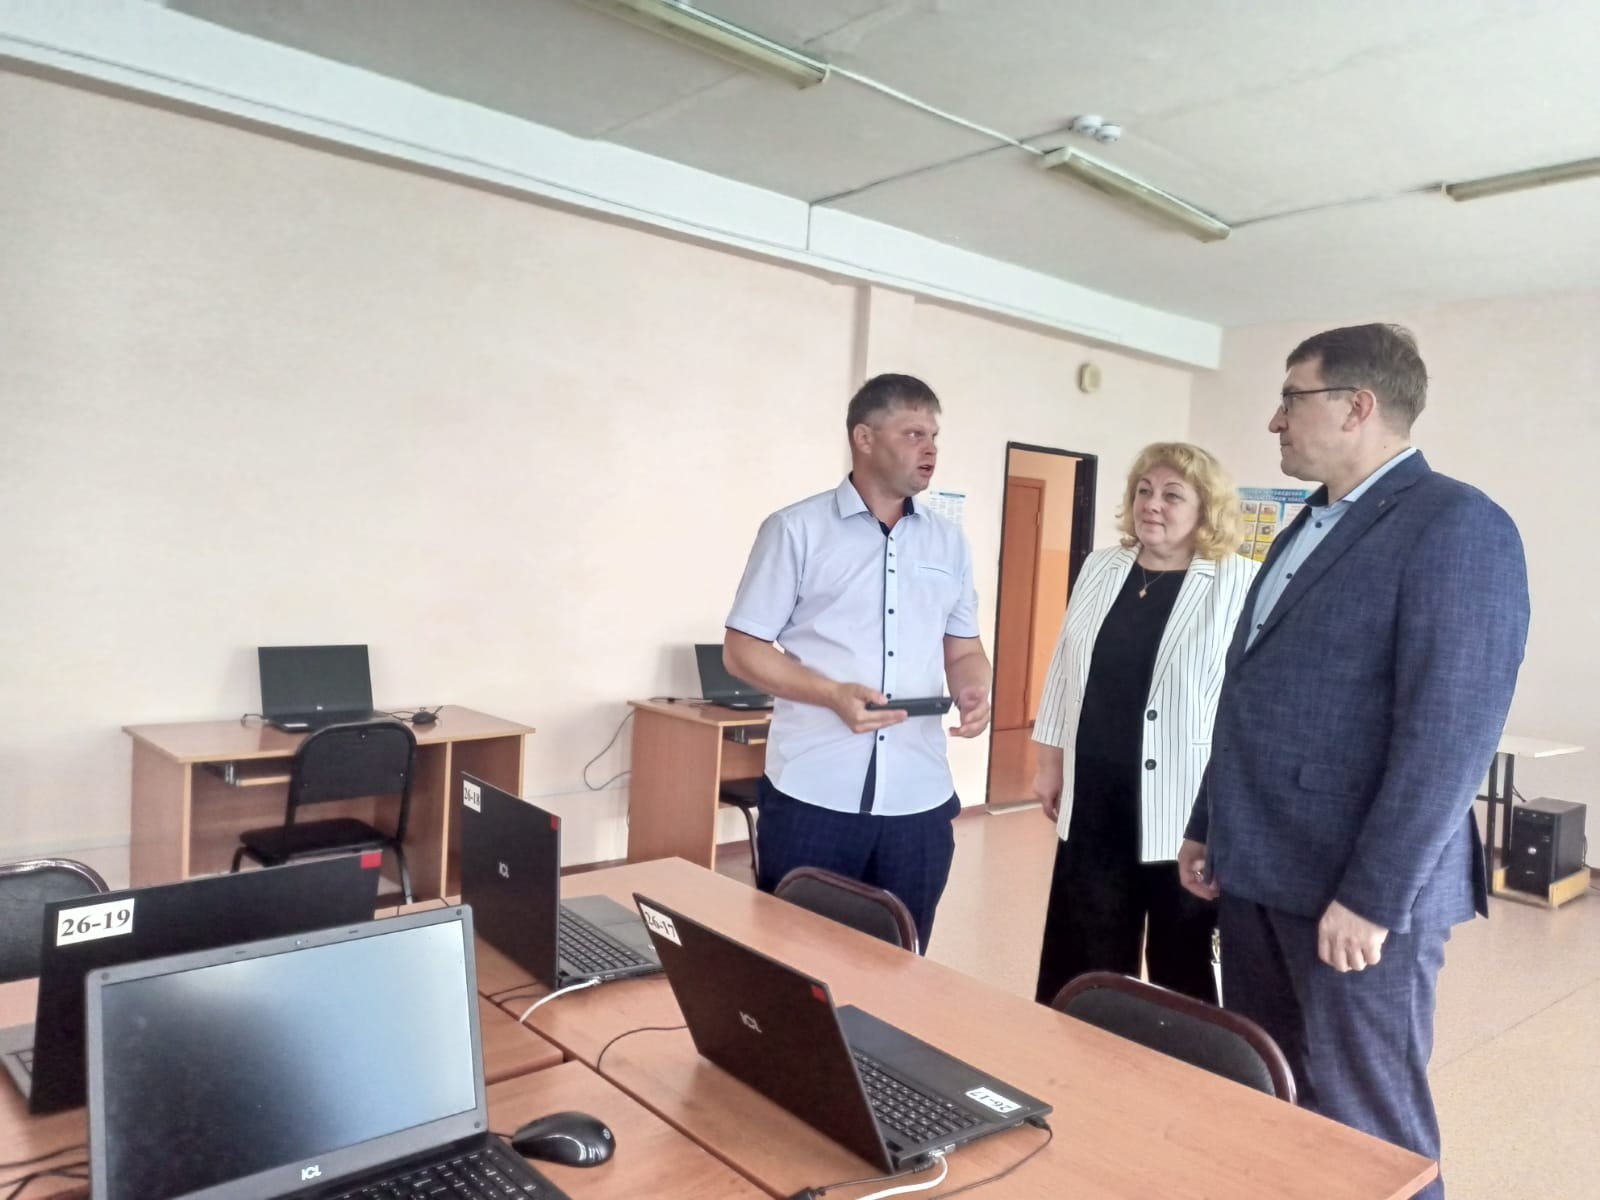 Оценка интернет-радио "Гимназия FM" Министром образования Омской области